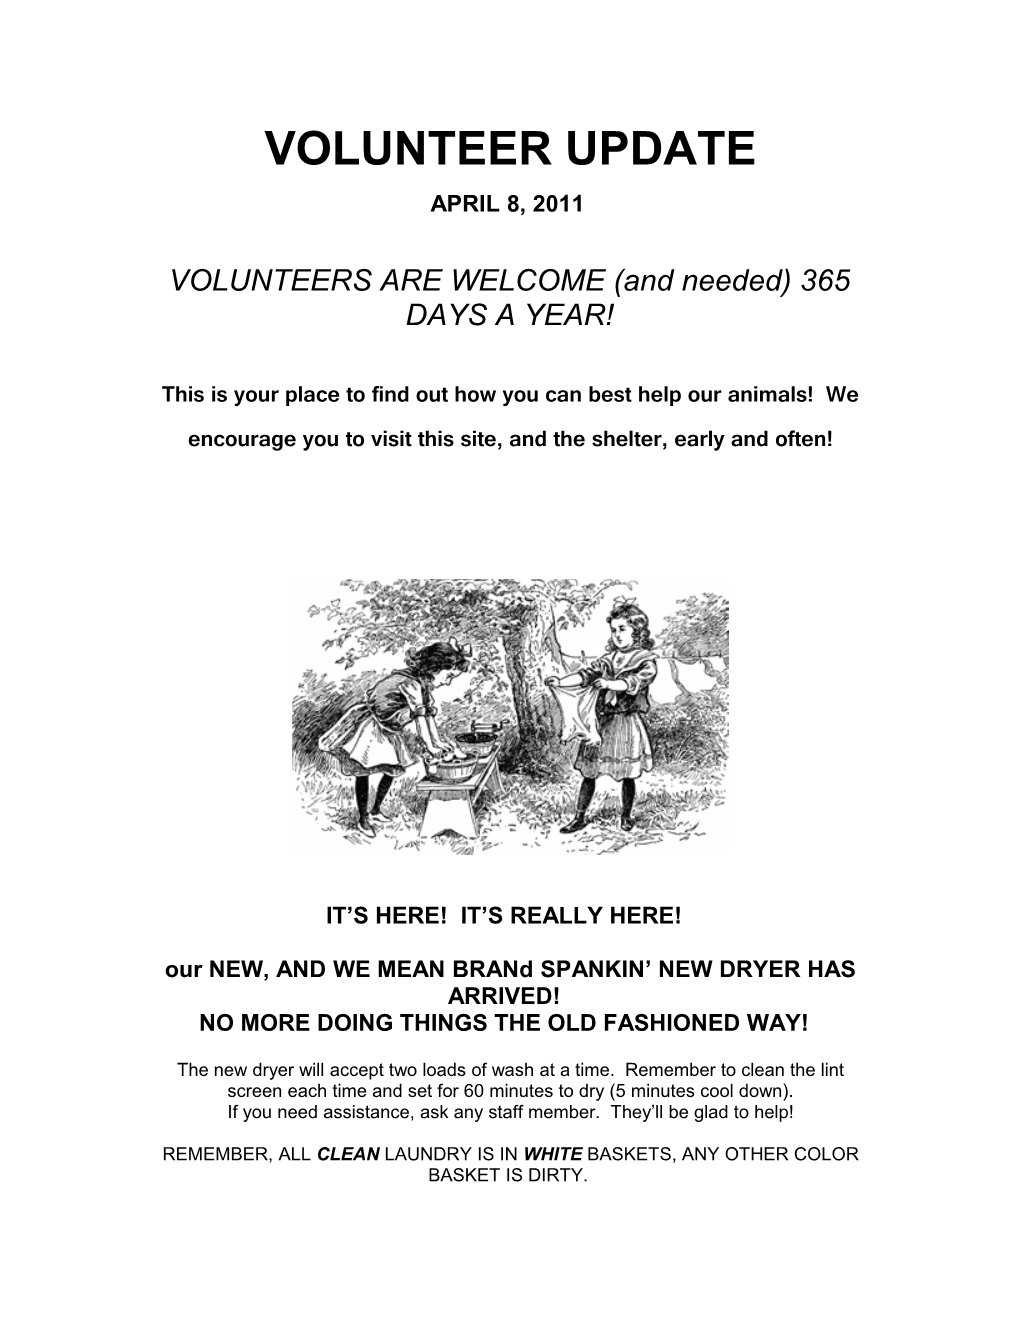 Volunteer Section of Weekly Update on Webpage